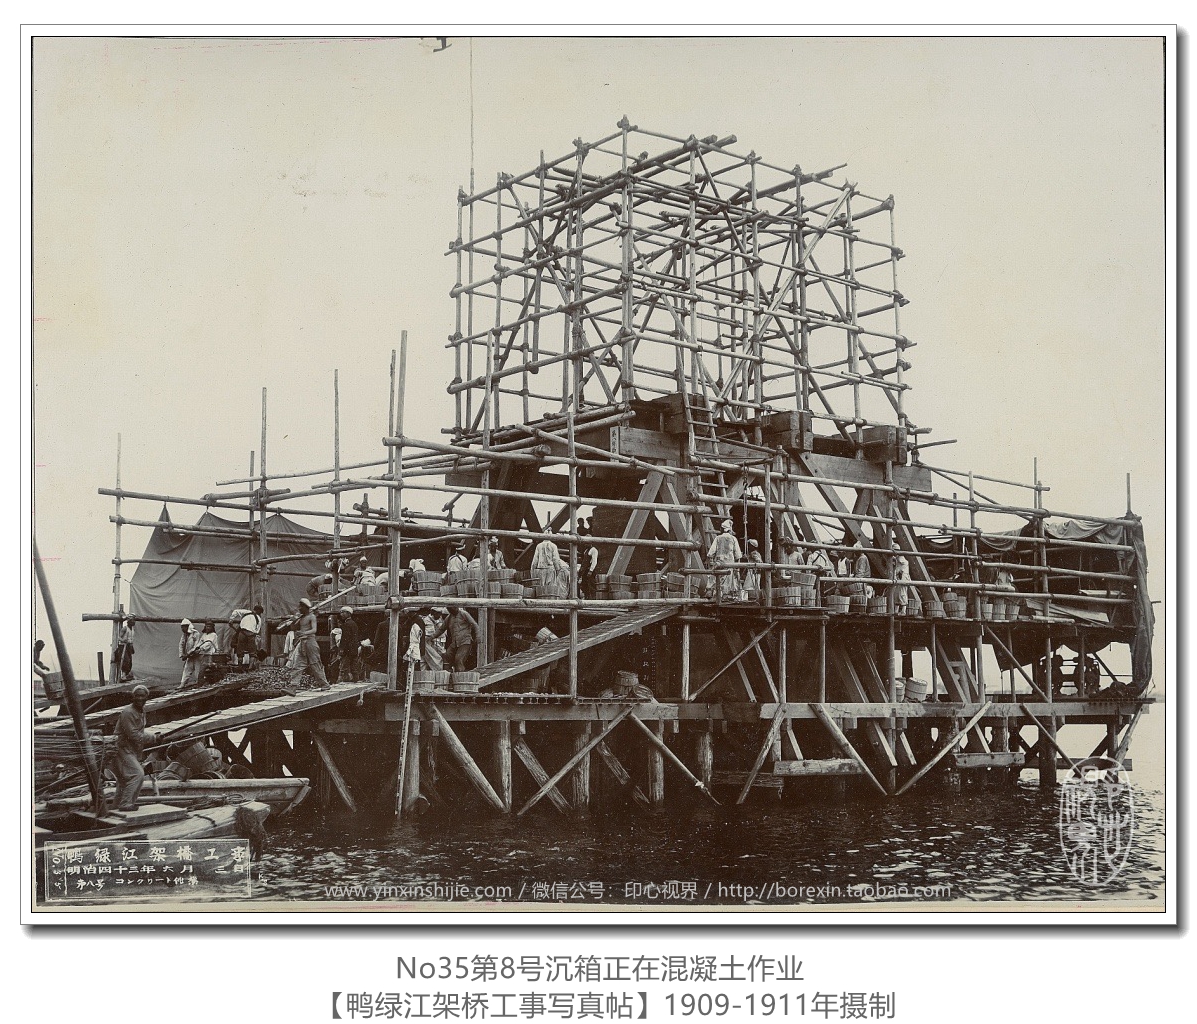 【万卷书】《鸭绿江架桥工事写真帖1911》No35第8号沉箱正在混凝土作业